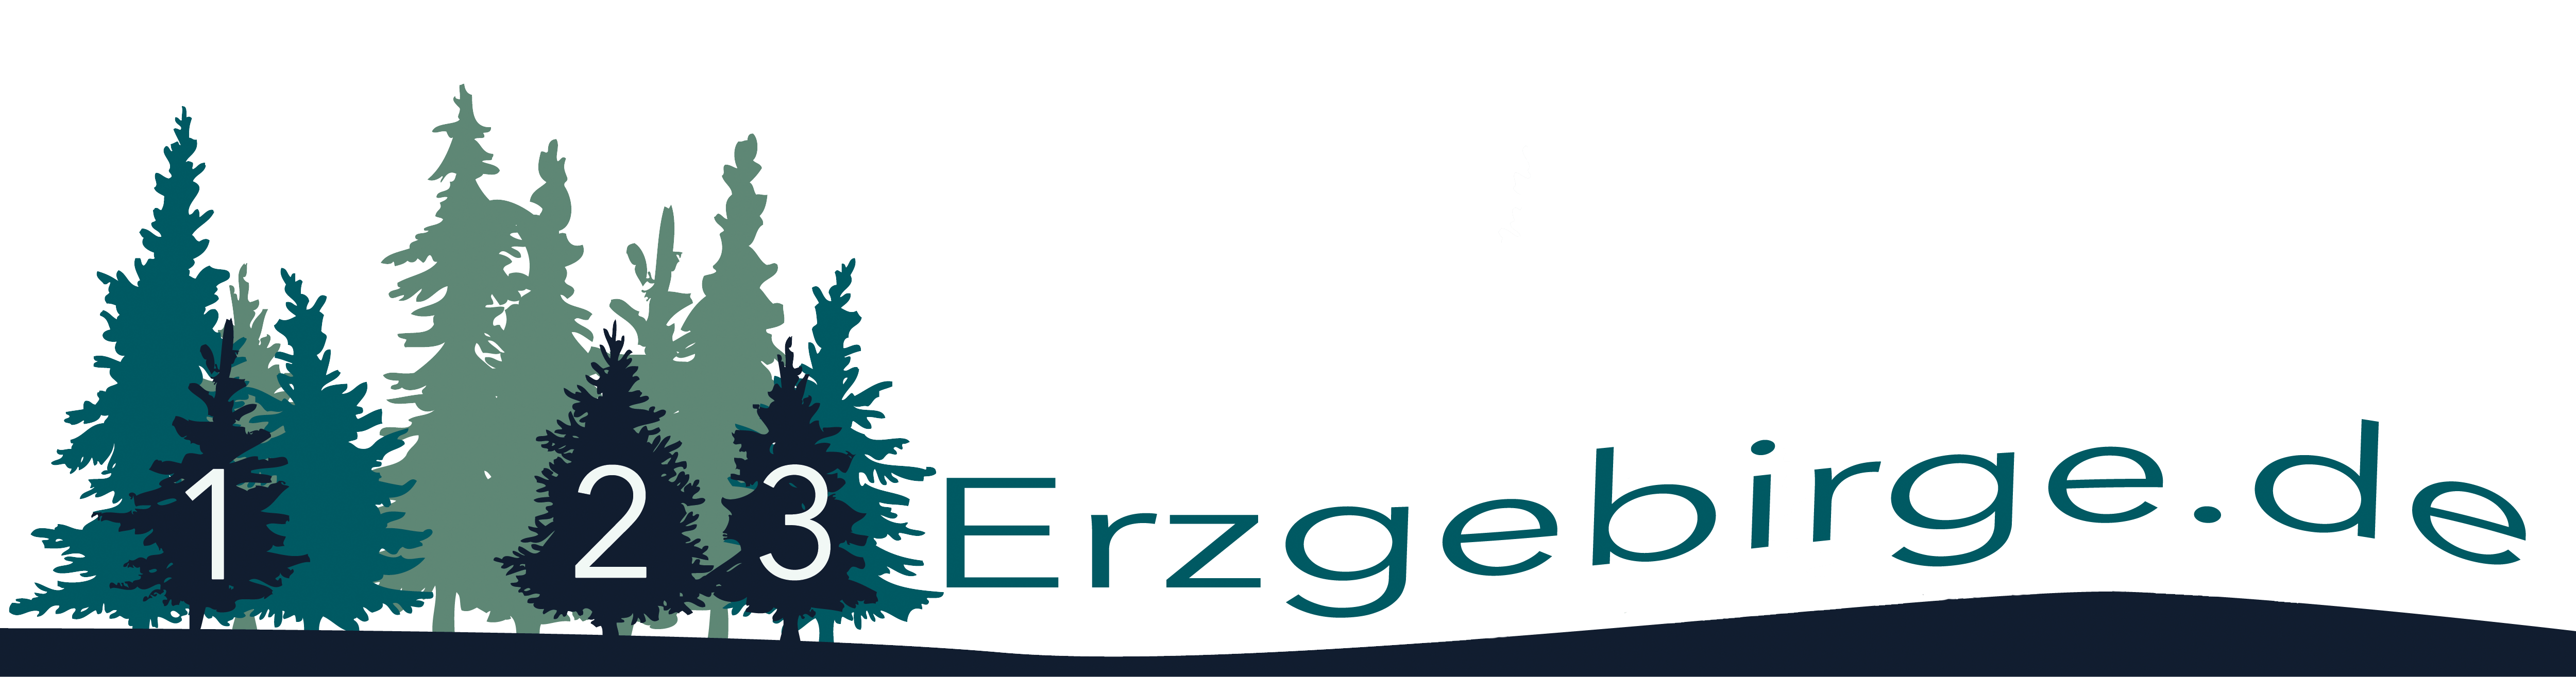 123-Erzgebirge